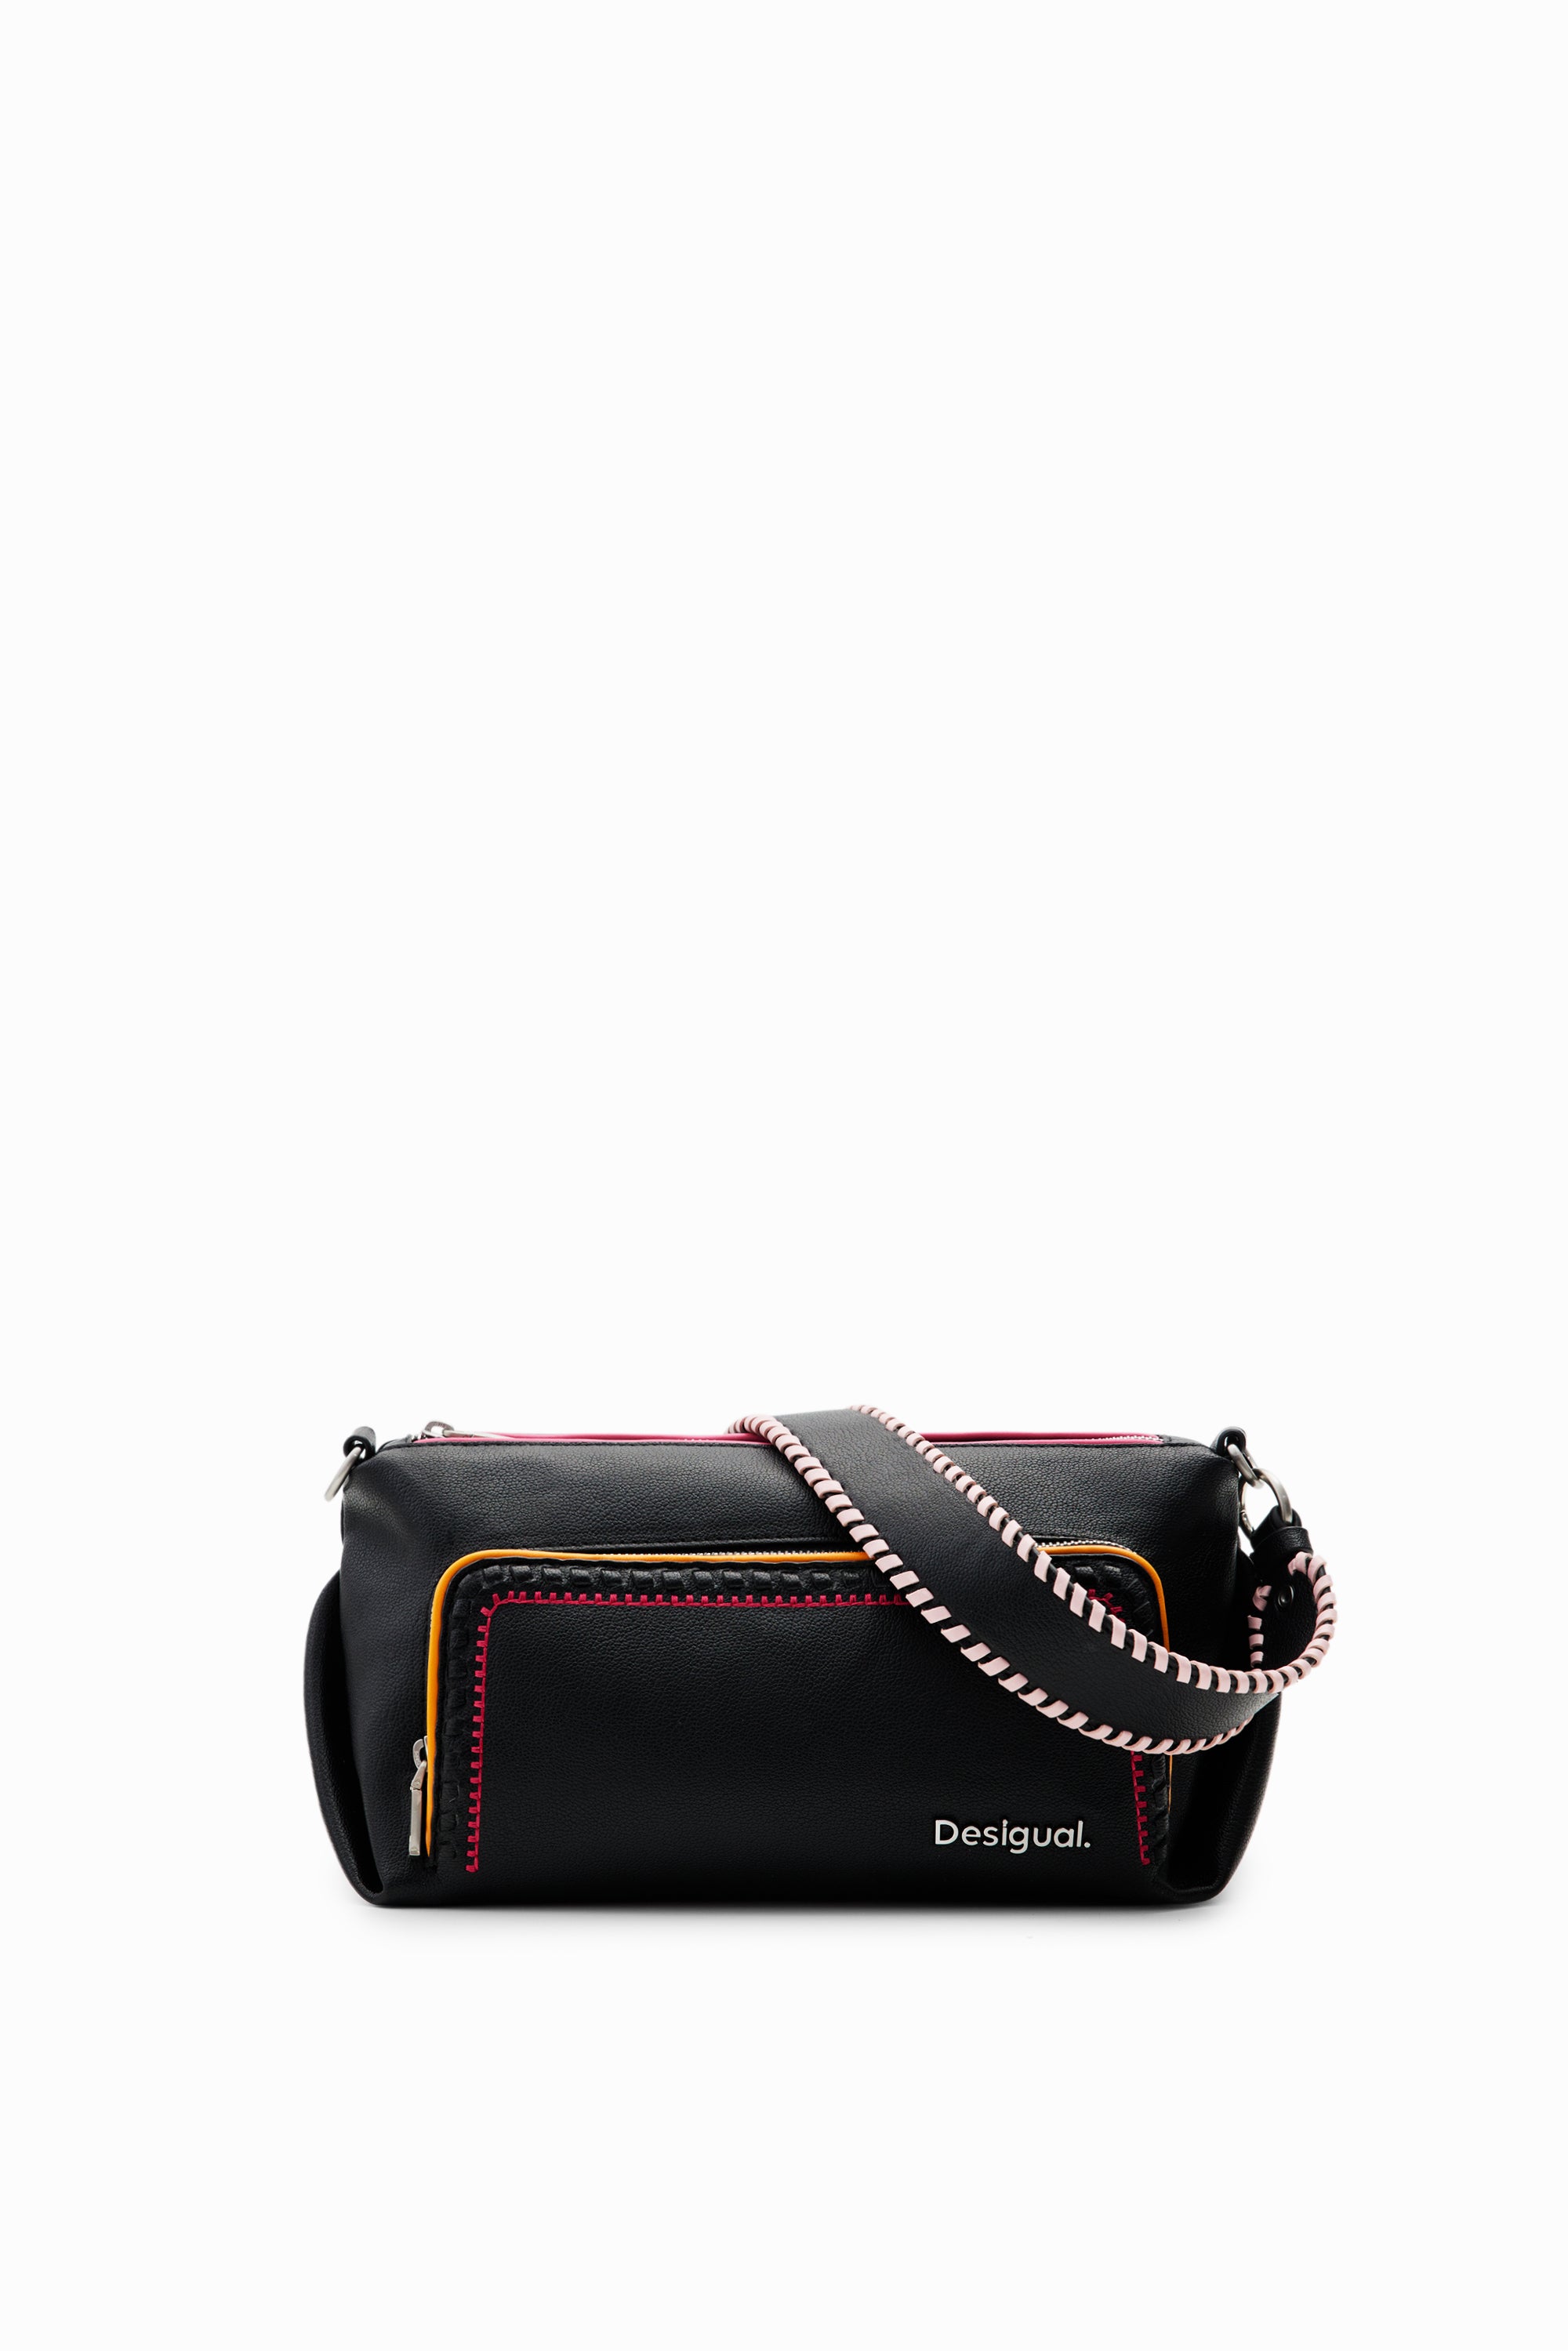 Desigual handbag 24SAXP74 Black